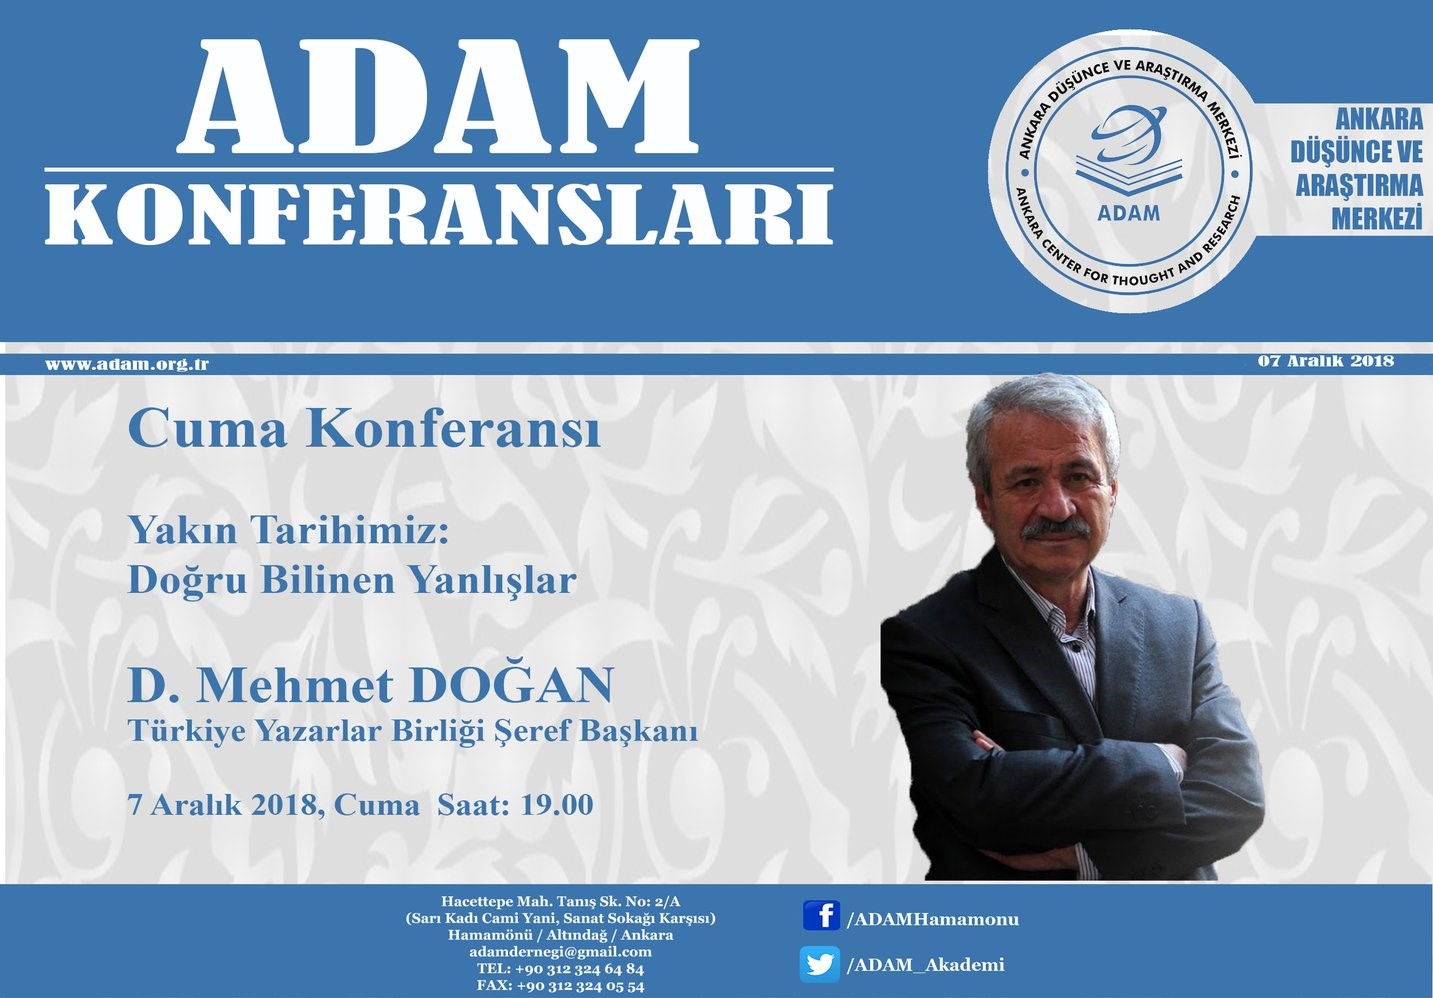 D. Mehmet Doğan ile Yakın Tarihimiz: Doğru Bilinen Yanlışlar